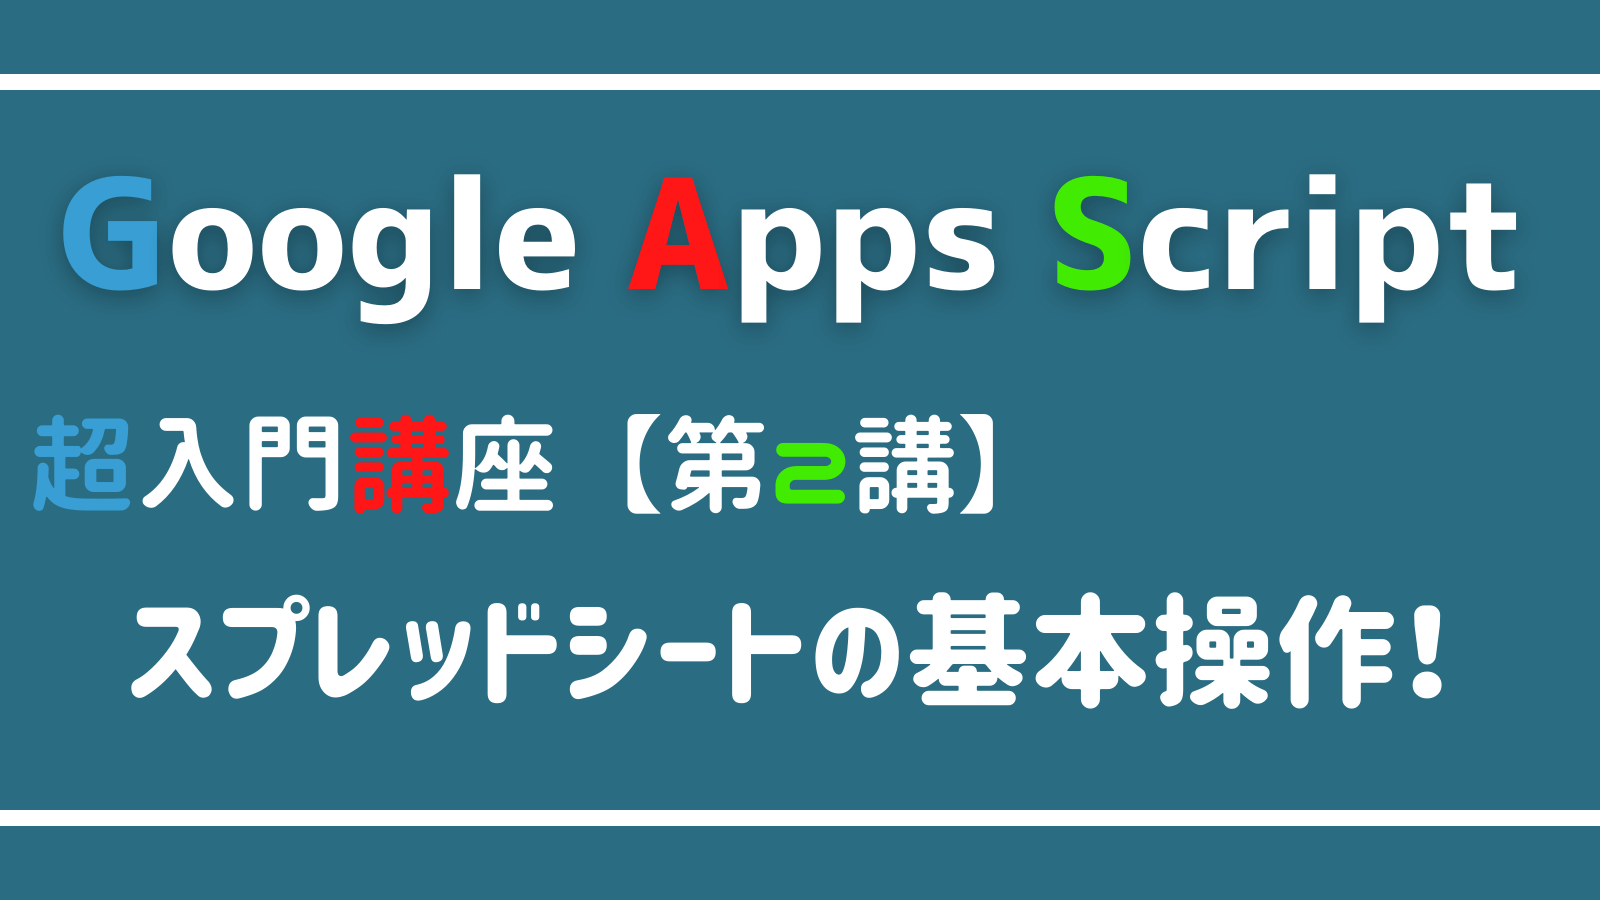 Google Apps Script スプレッドシートの使い方